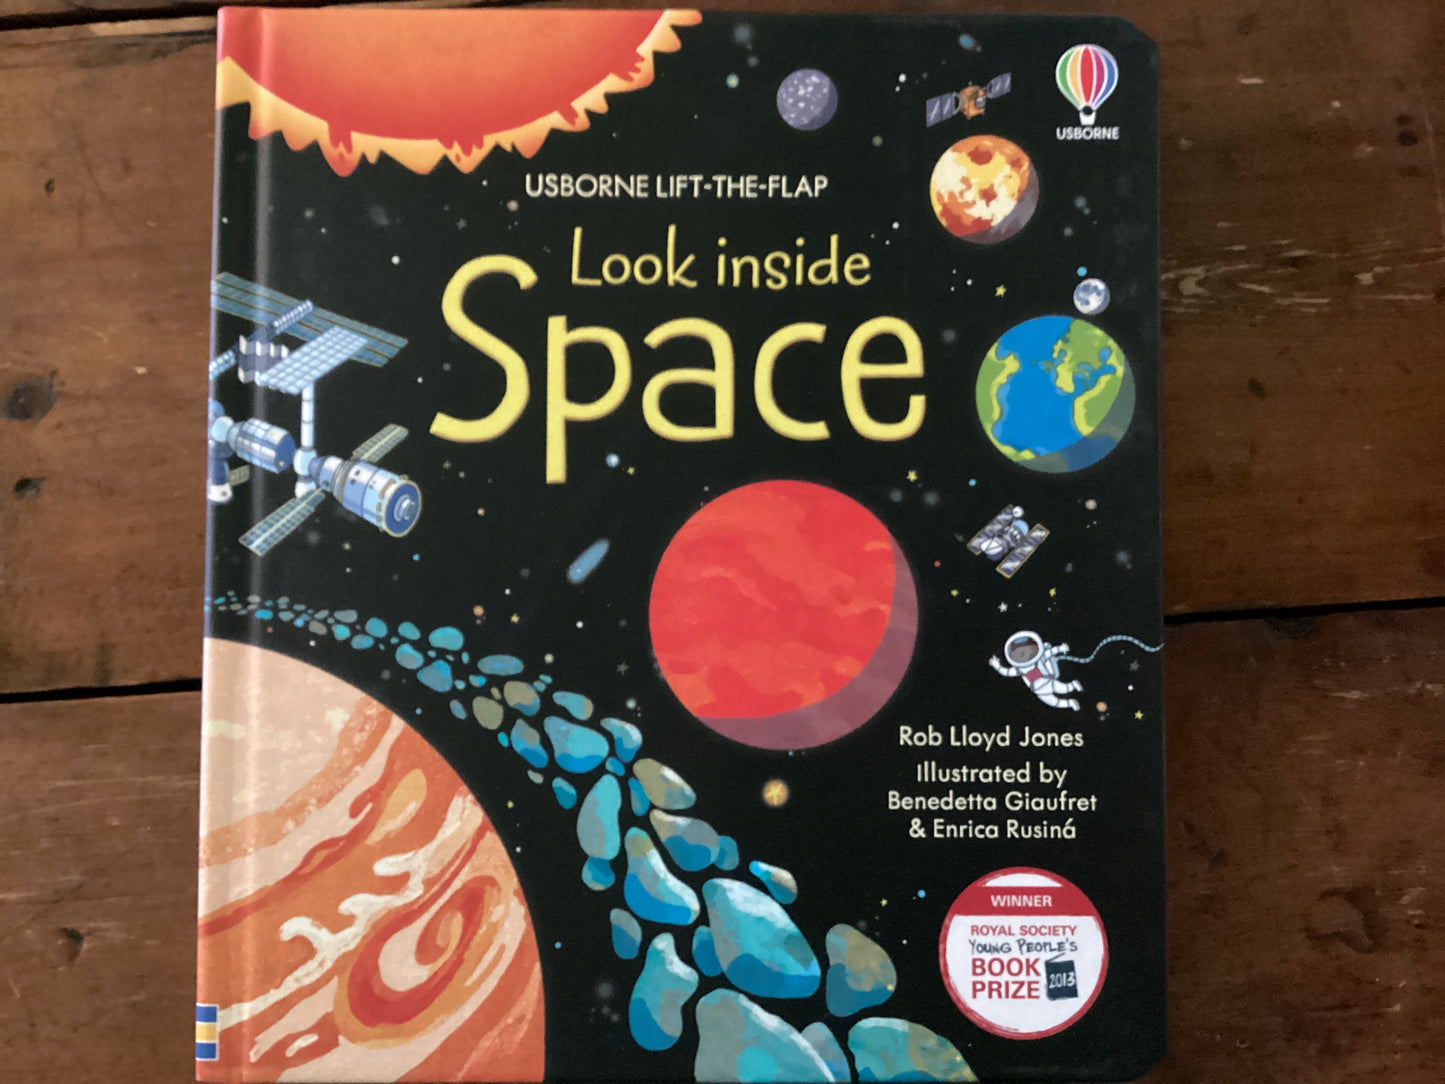 Look inside Space